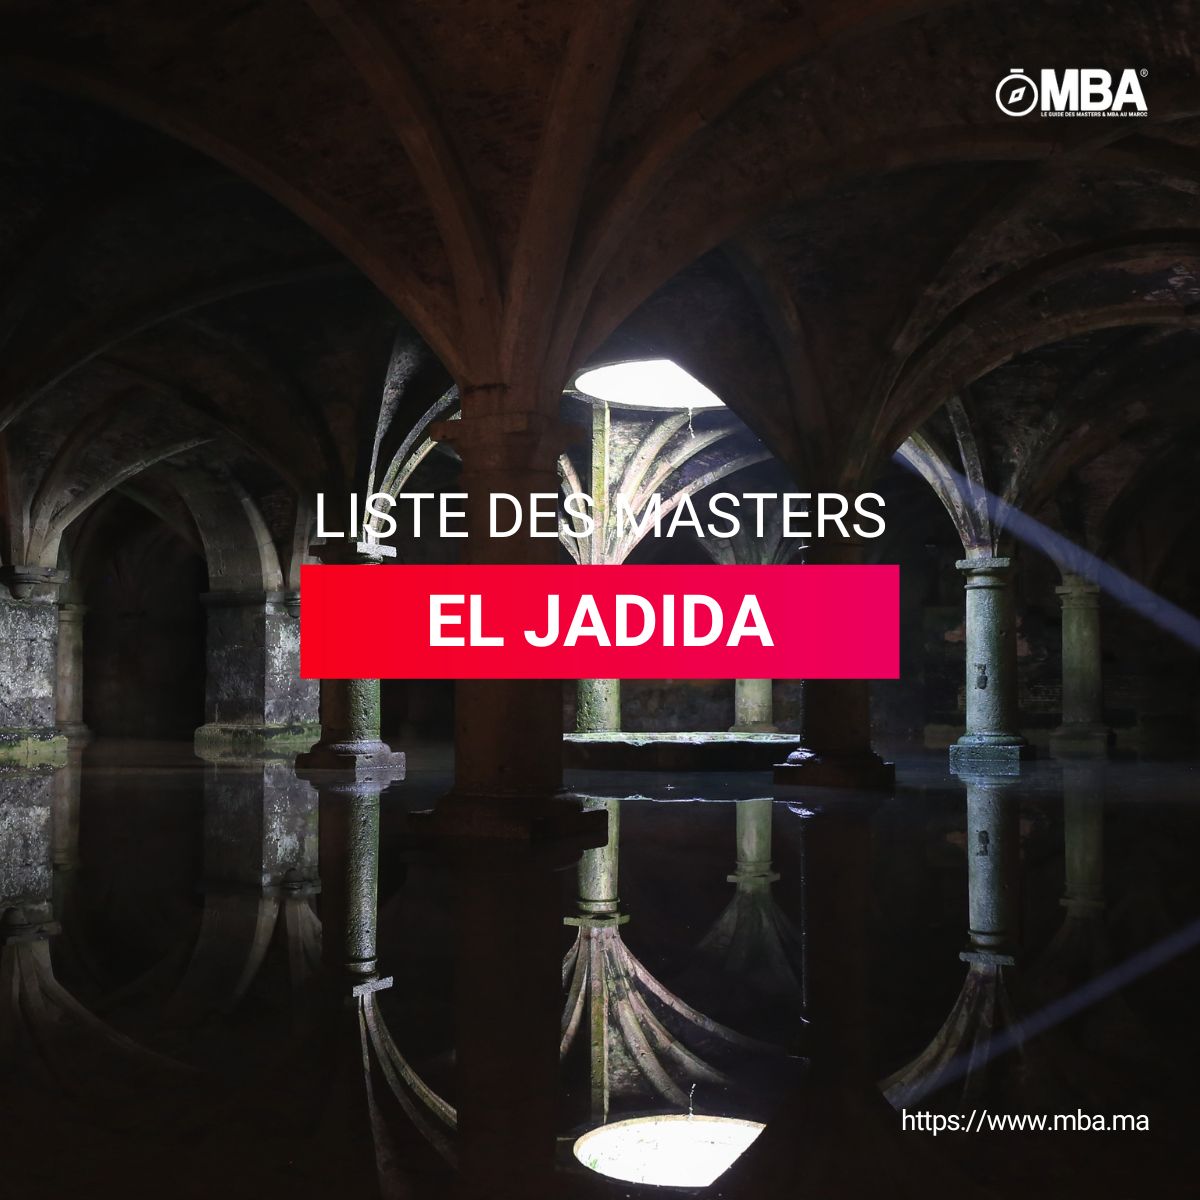 Masters à El Jadida l MBA.ma